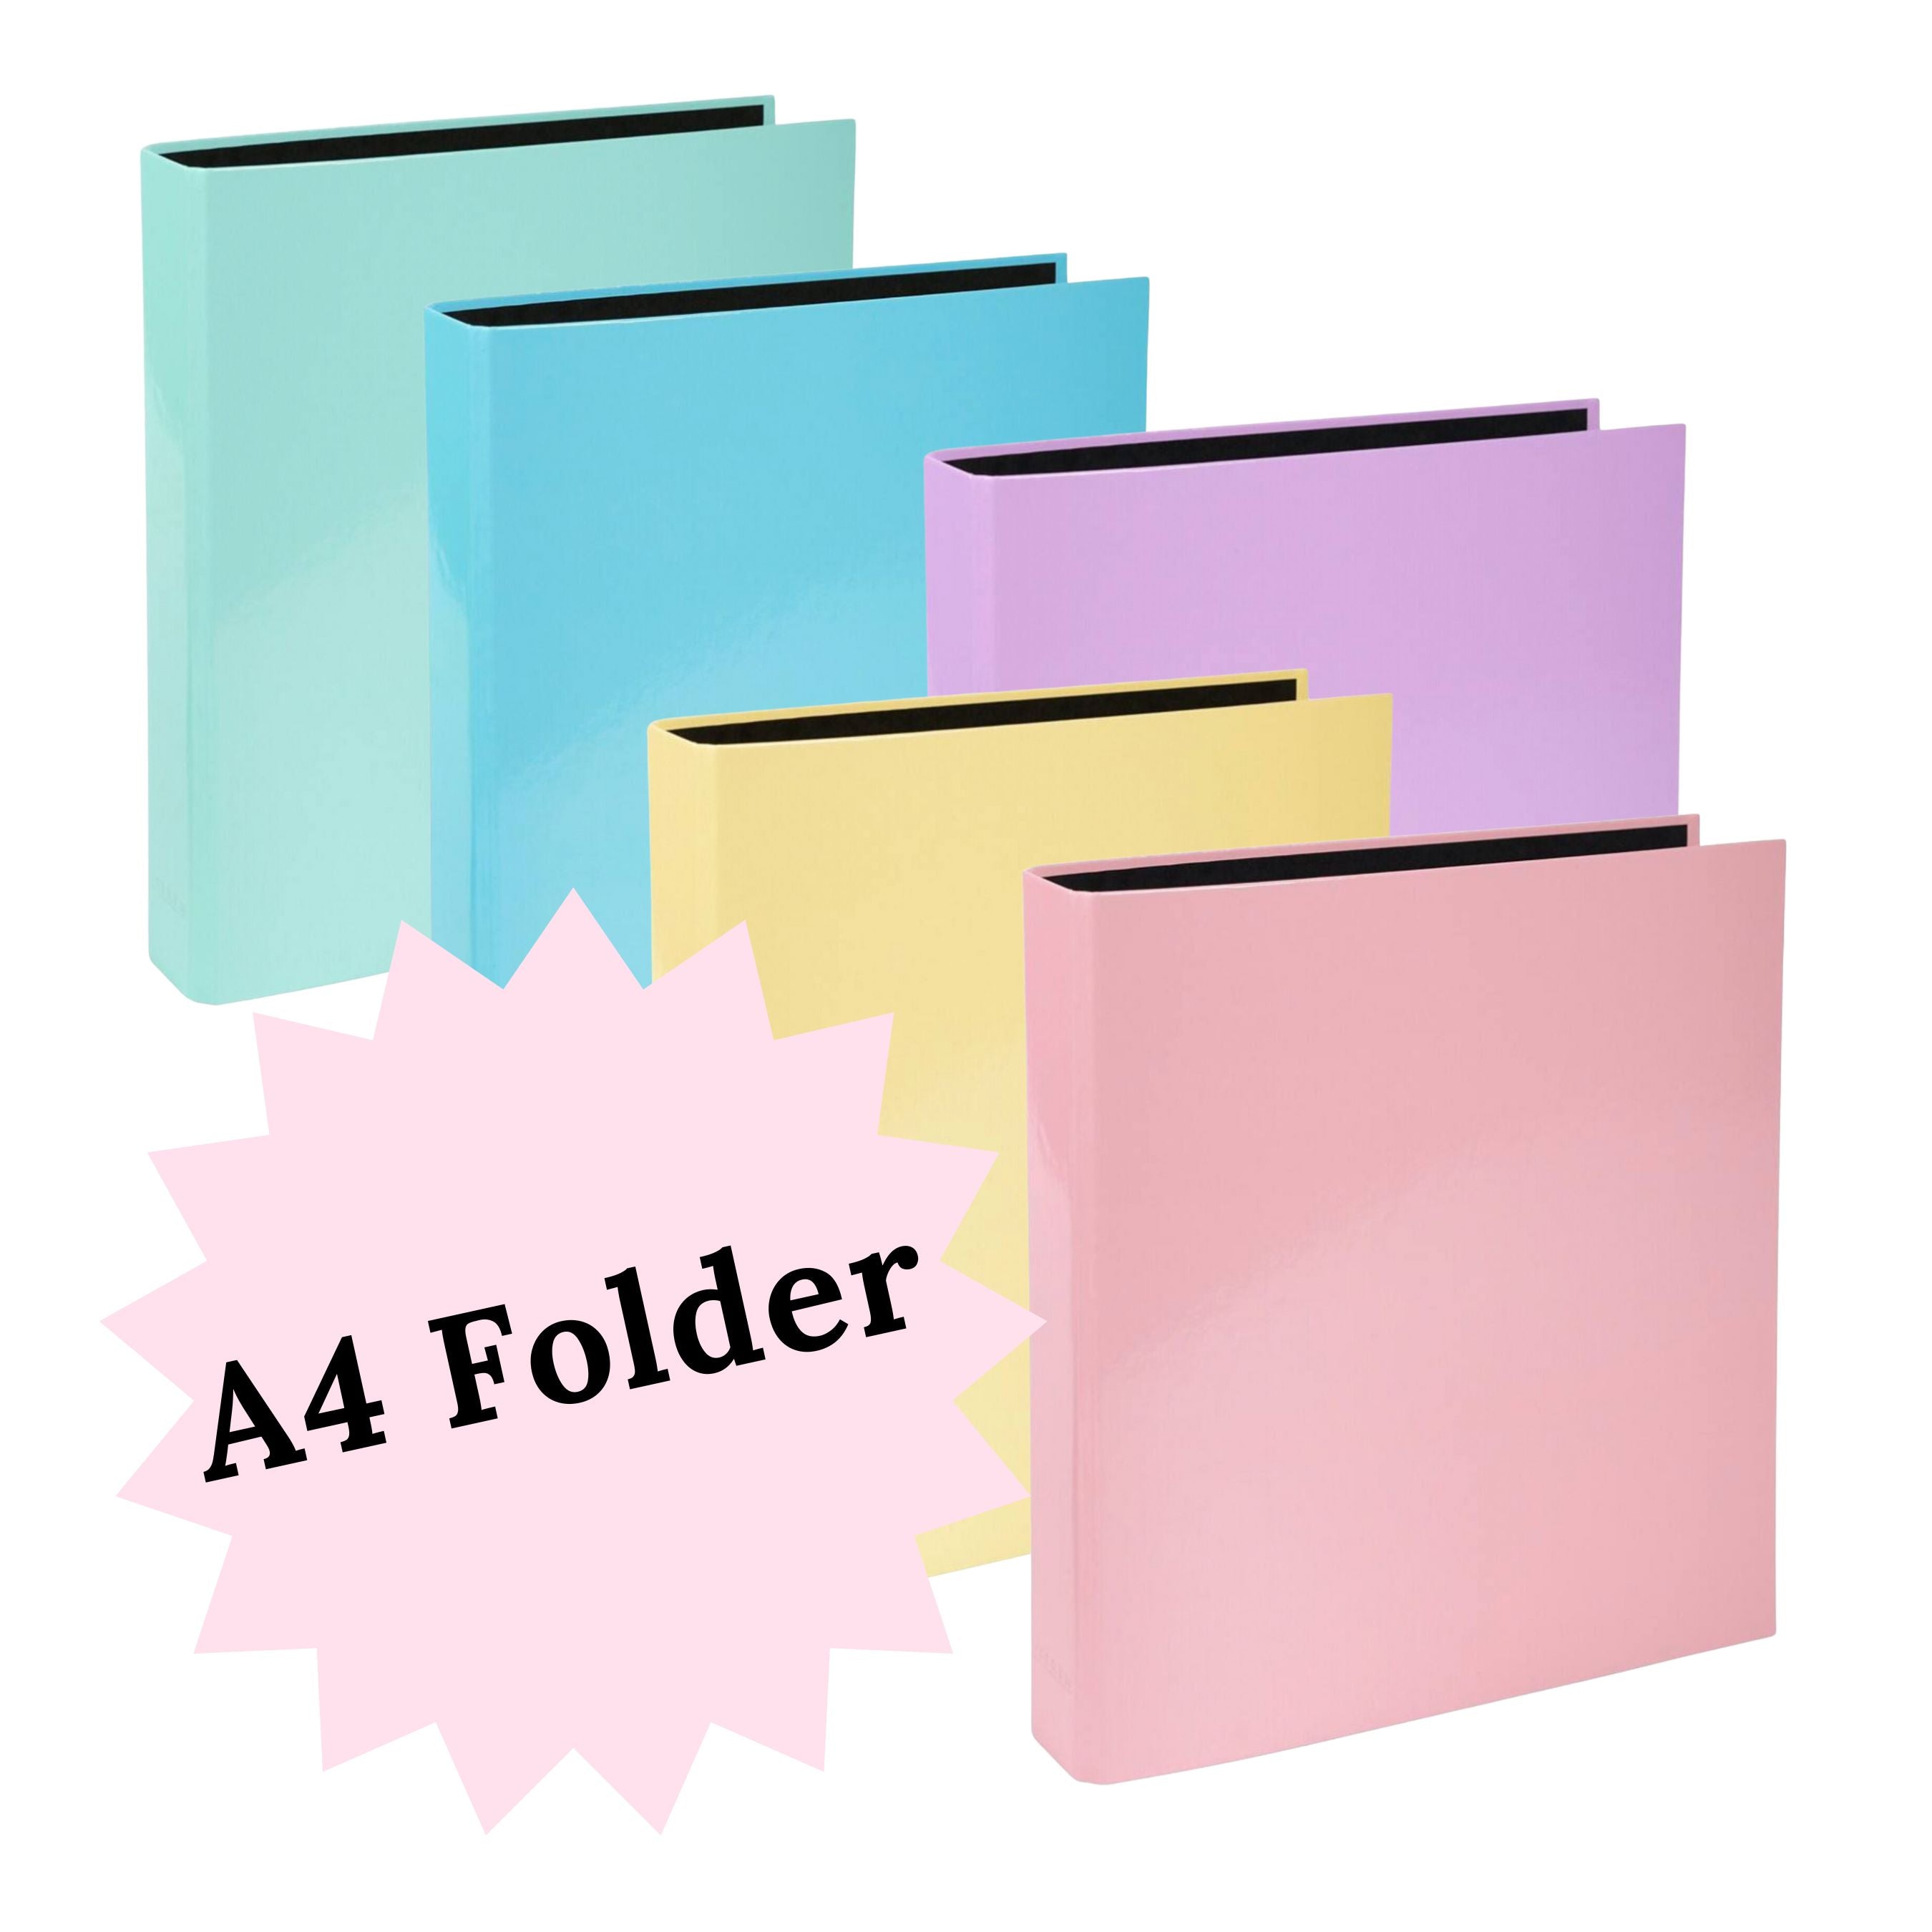 Ultimate Kit, A4 Folder, 3 Booklets, Pen and Fine Liner, Alphabet Sticker Sheet,